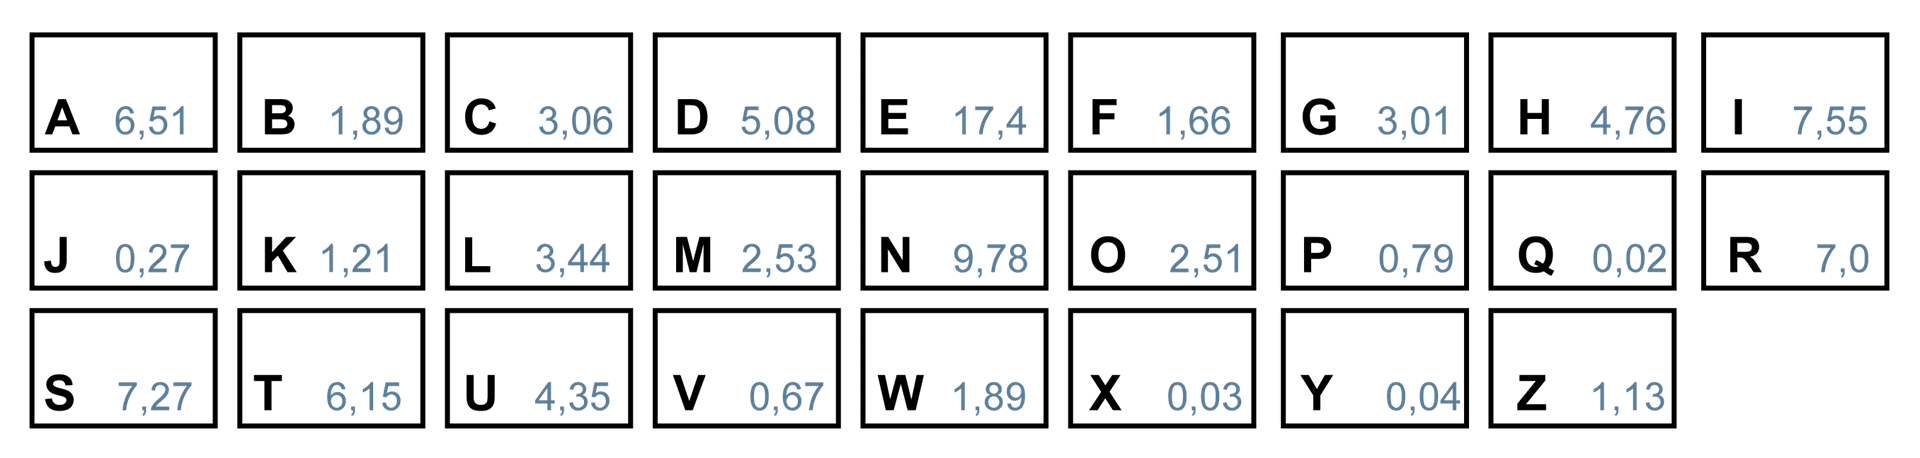 Monoalphabetische Substitution und Verteilung der Buchstaben für das deutsche Alphabet